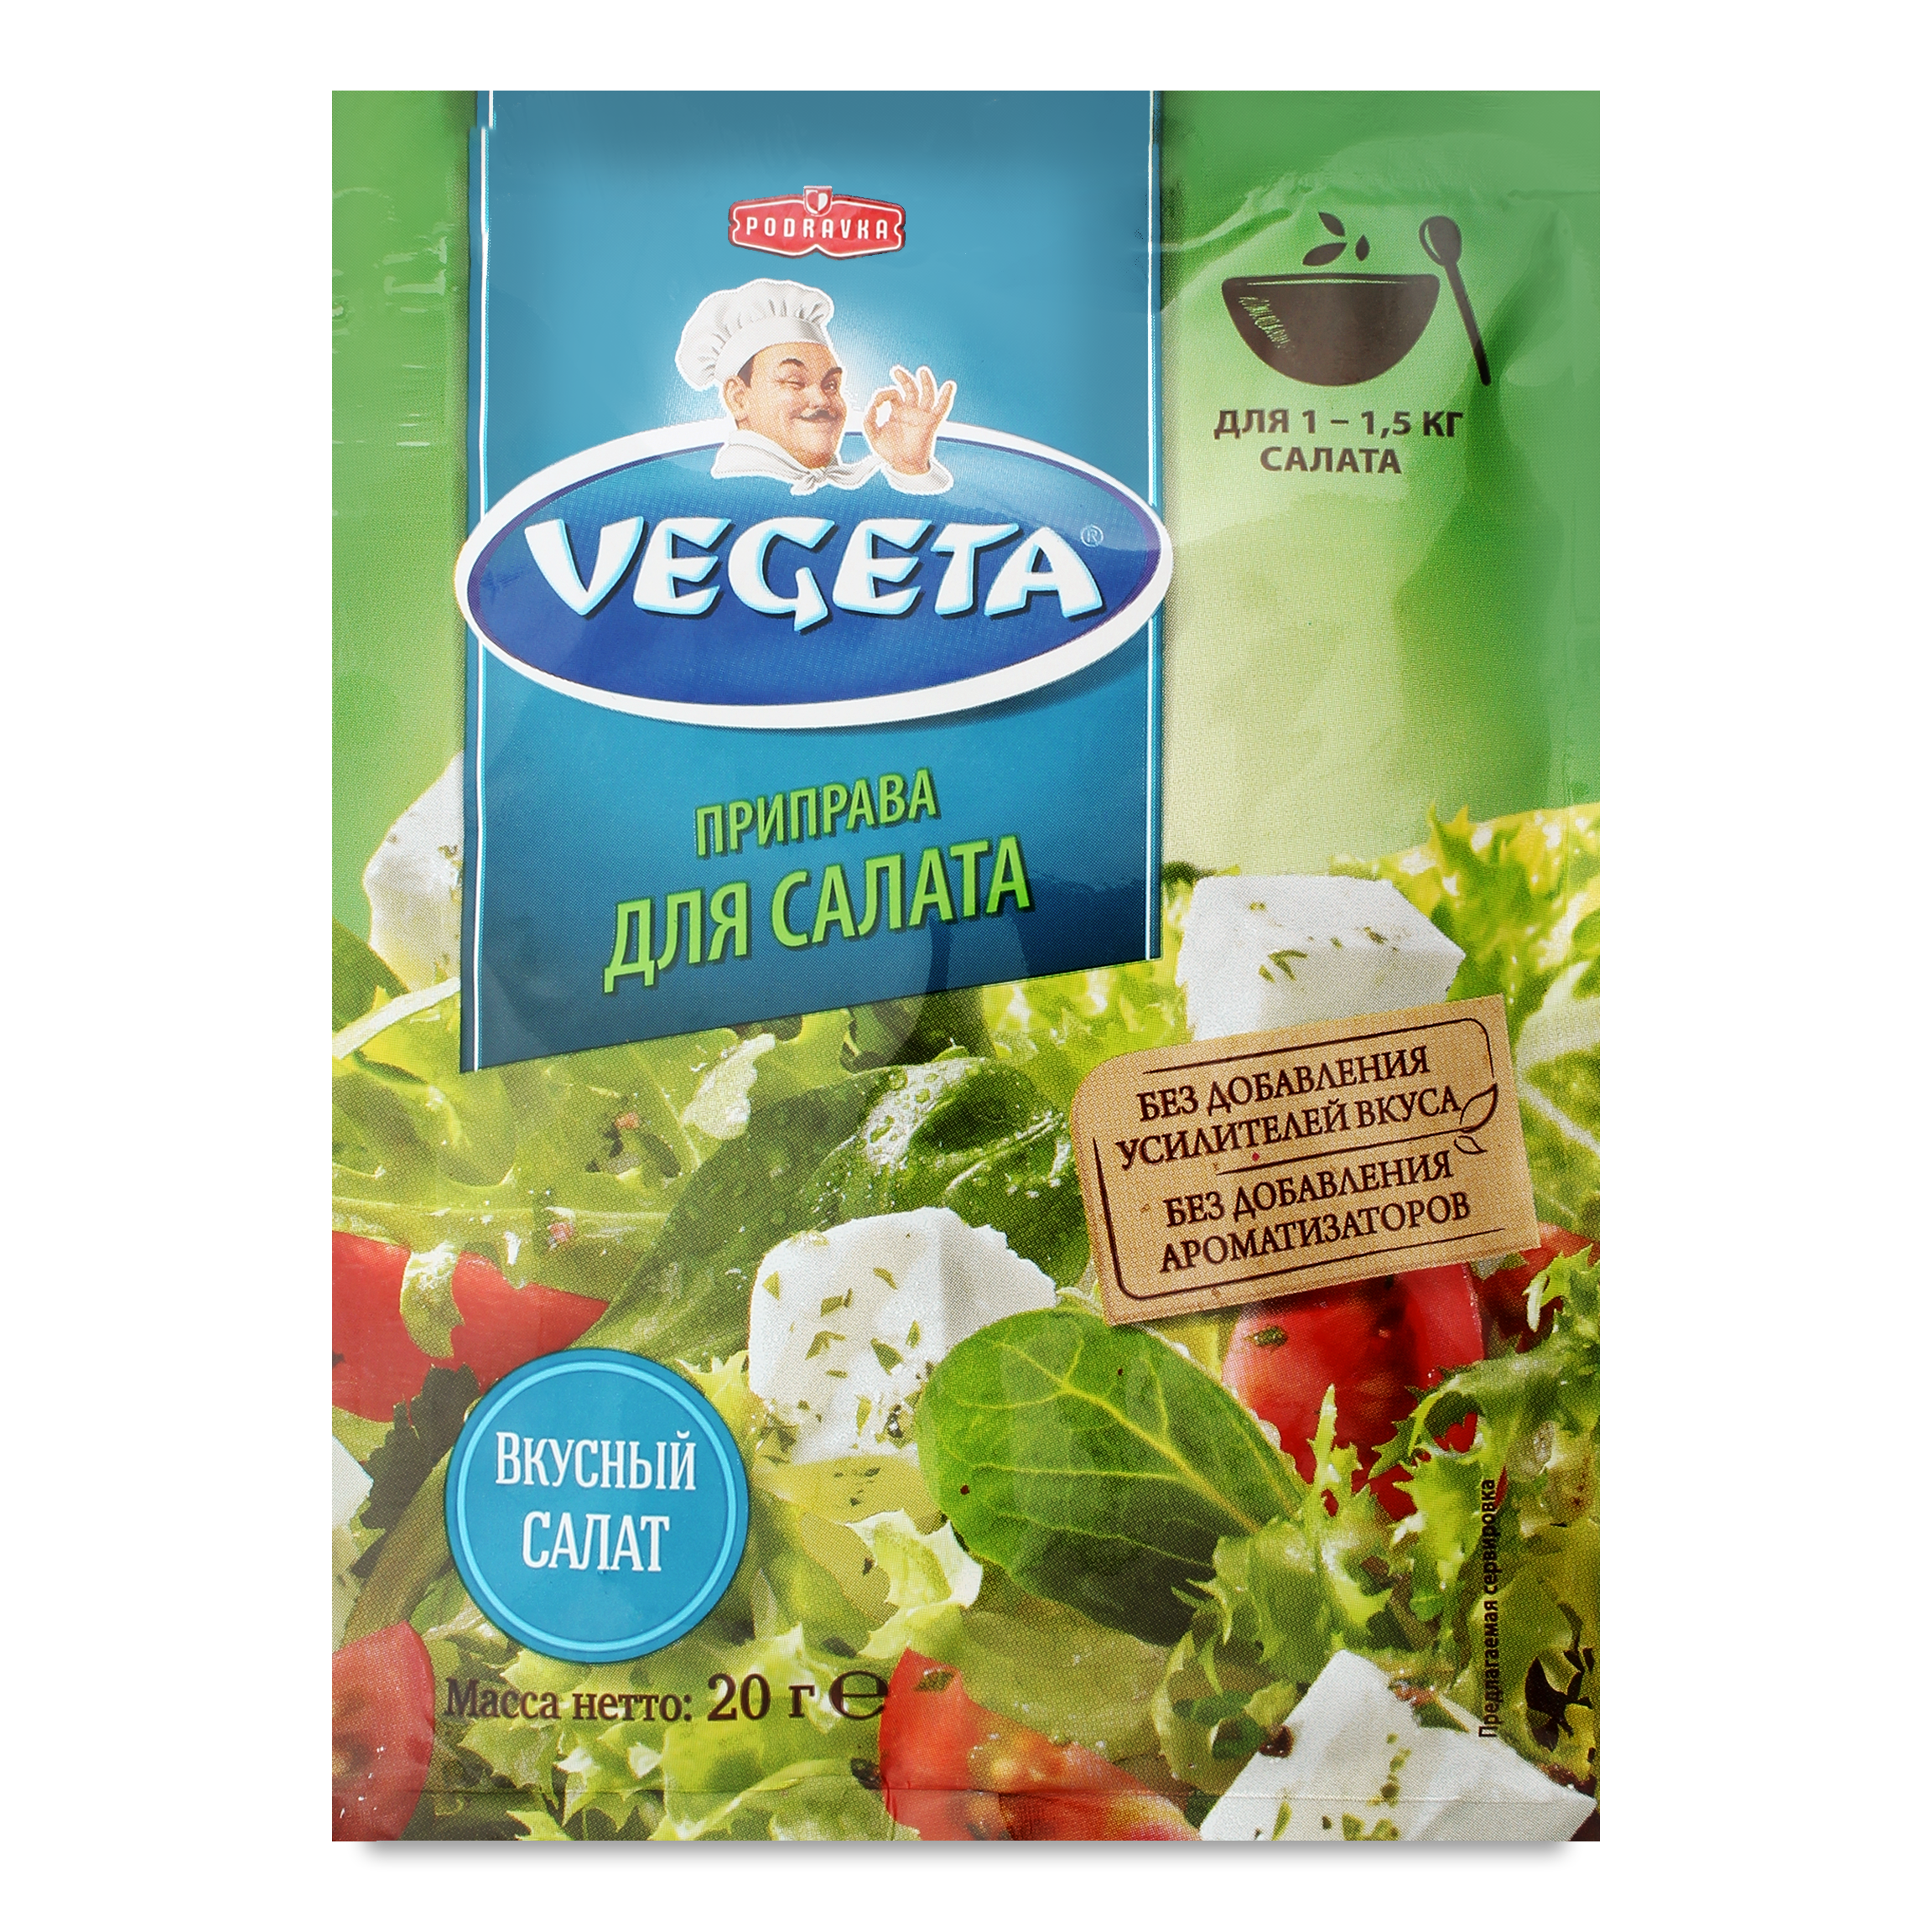 Vegeta for salad vegetable spices 20g 2